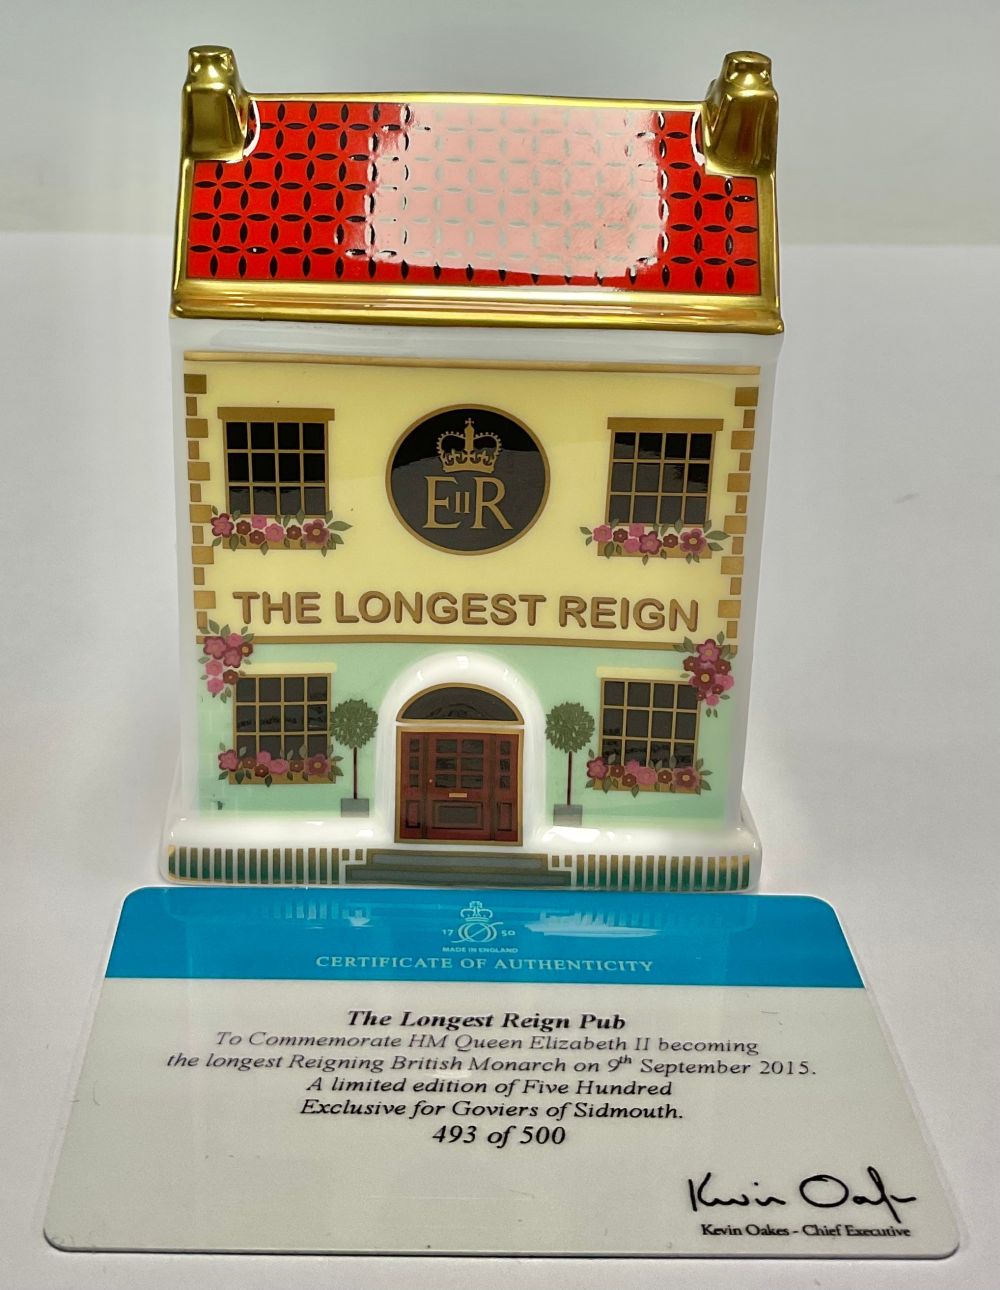 A Royal Crown Derby miniature model of a house, The Longest Reign Pub, 10cm high, commemorates HRH